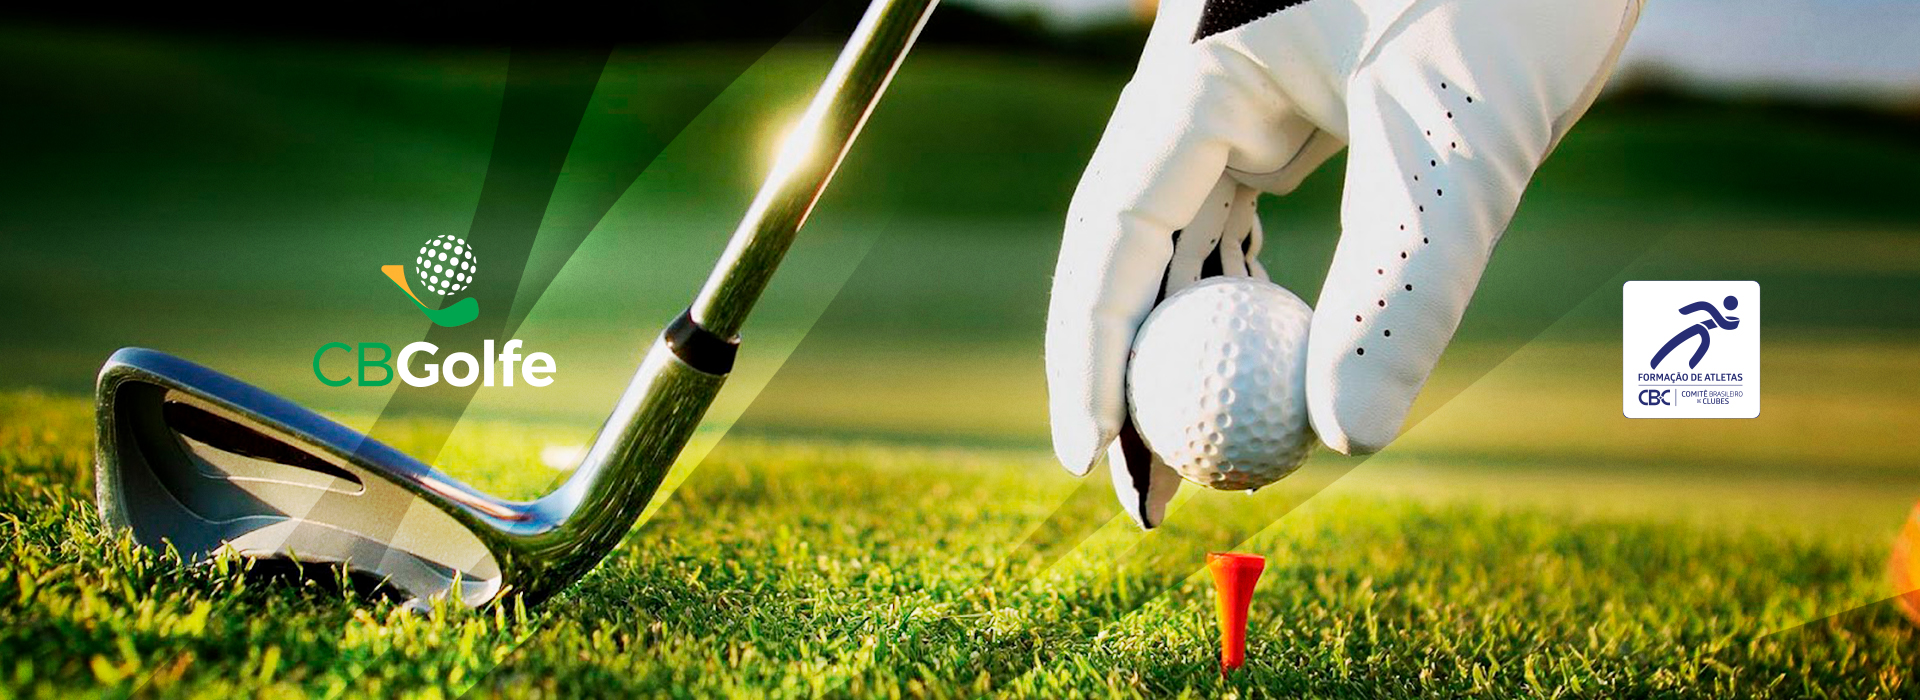 Comitê Brasileiro de Clubes – CBC fecha parceria com a Confederação Brasileira de Golfe - CBGolfe